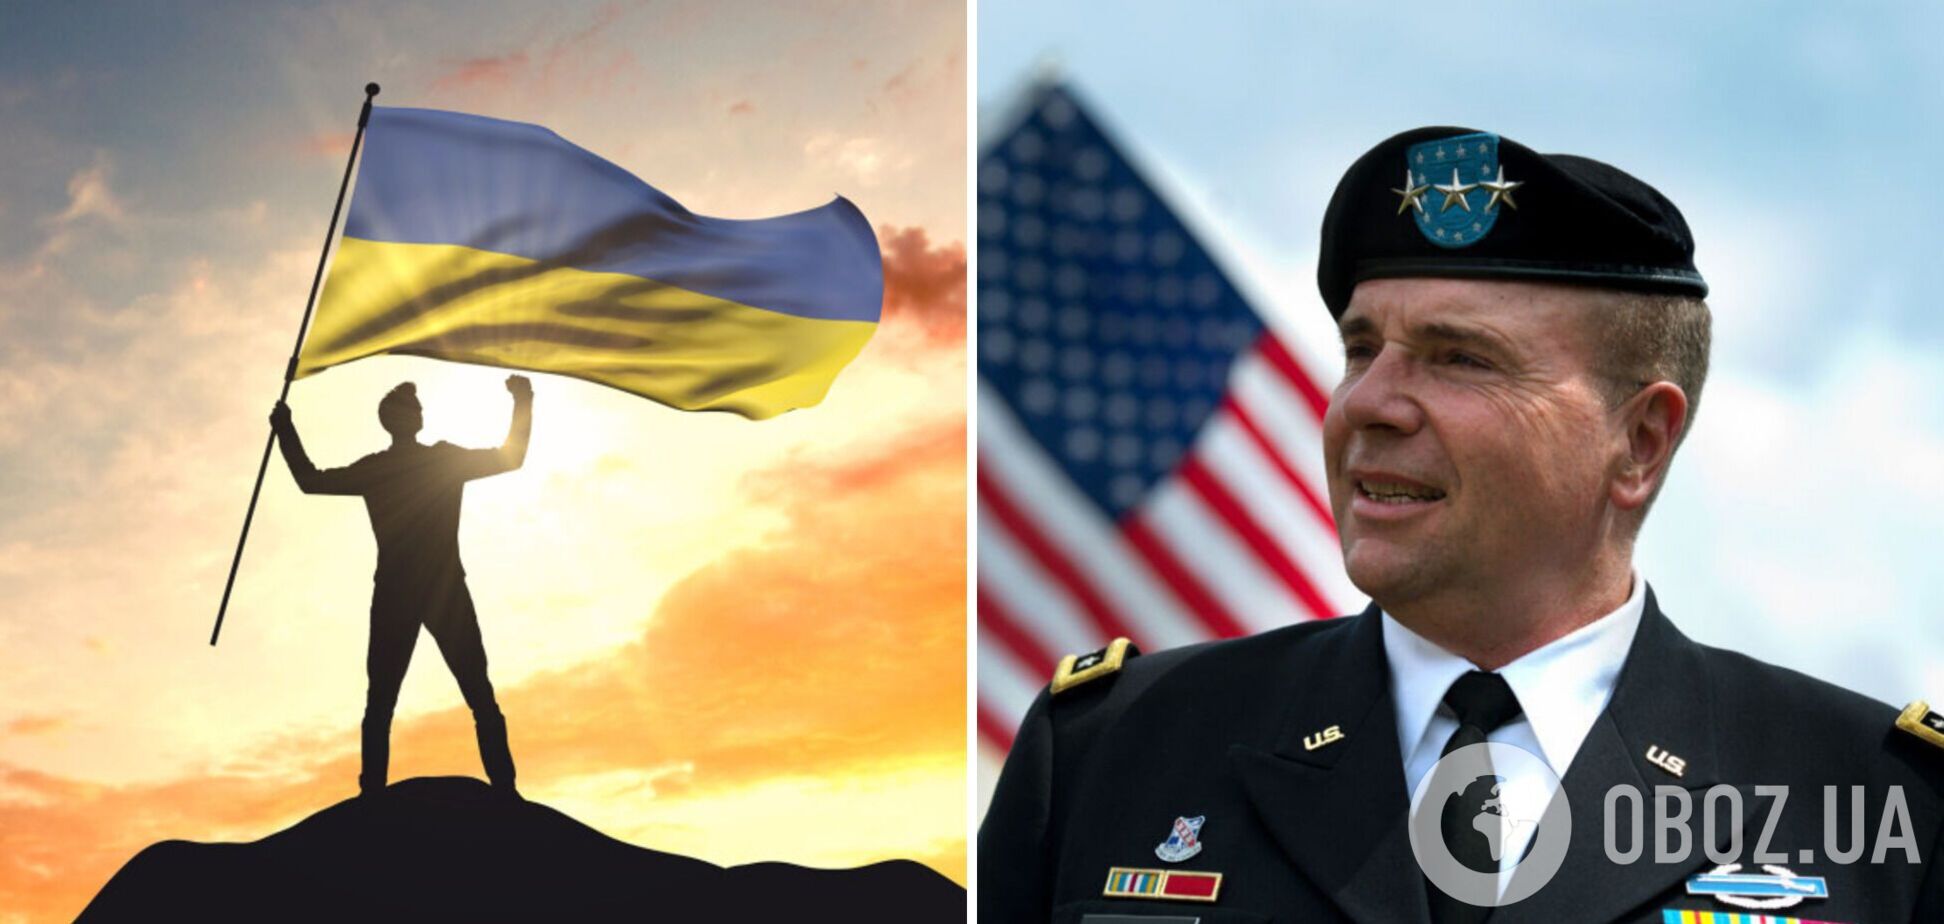 Ходжес сказал, что поможет Украине победить в войне